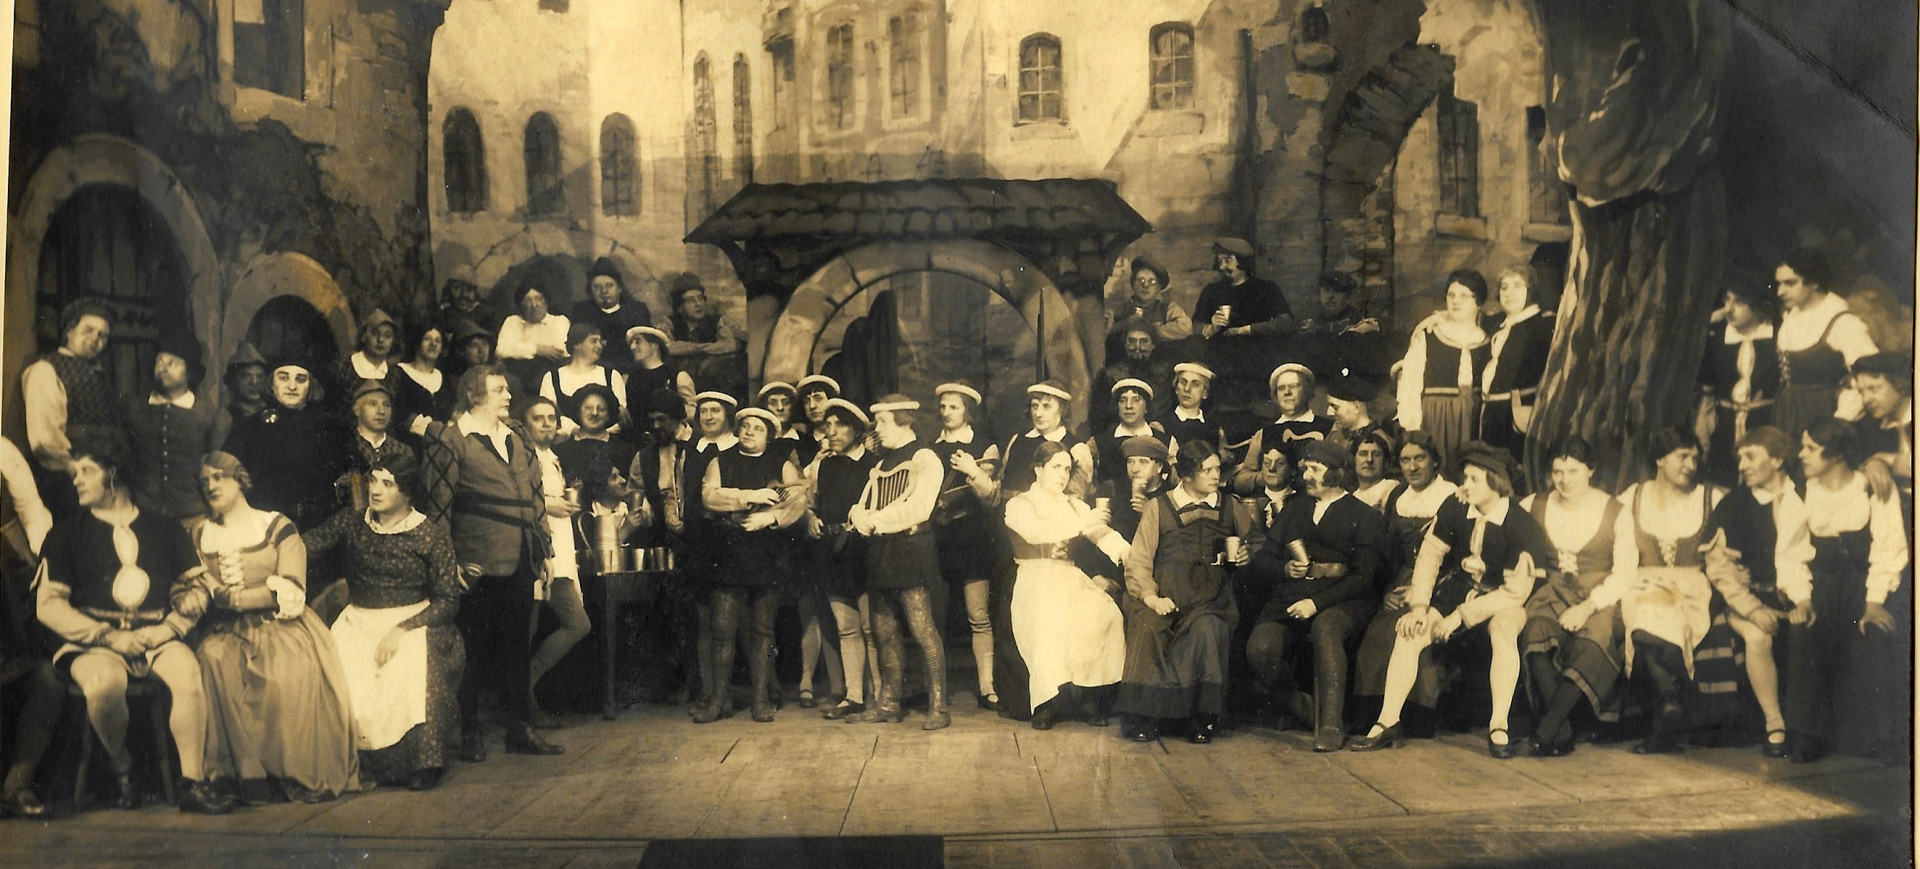 Et Loch en der Stadtmoor - Divertissementchen 1934 - Großer Chor im Bühnenbild